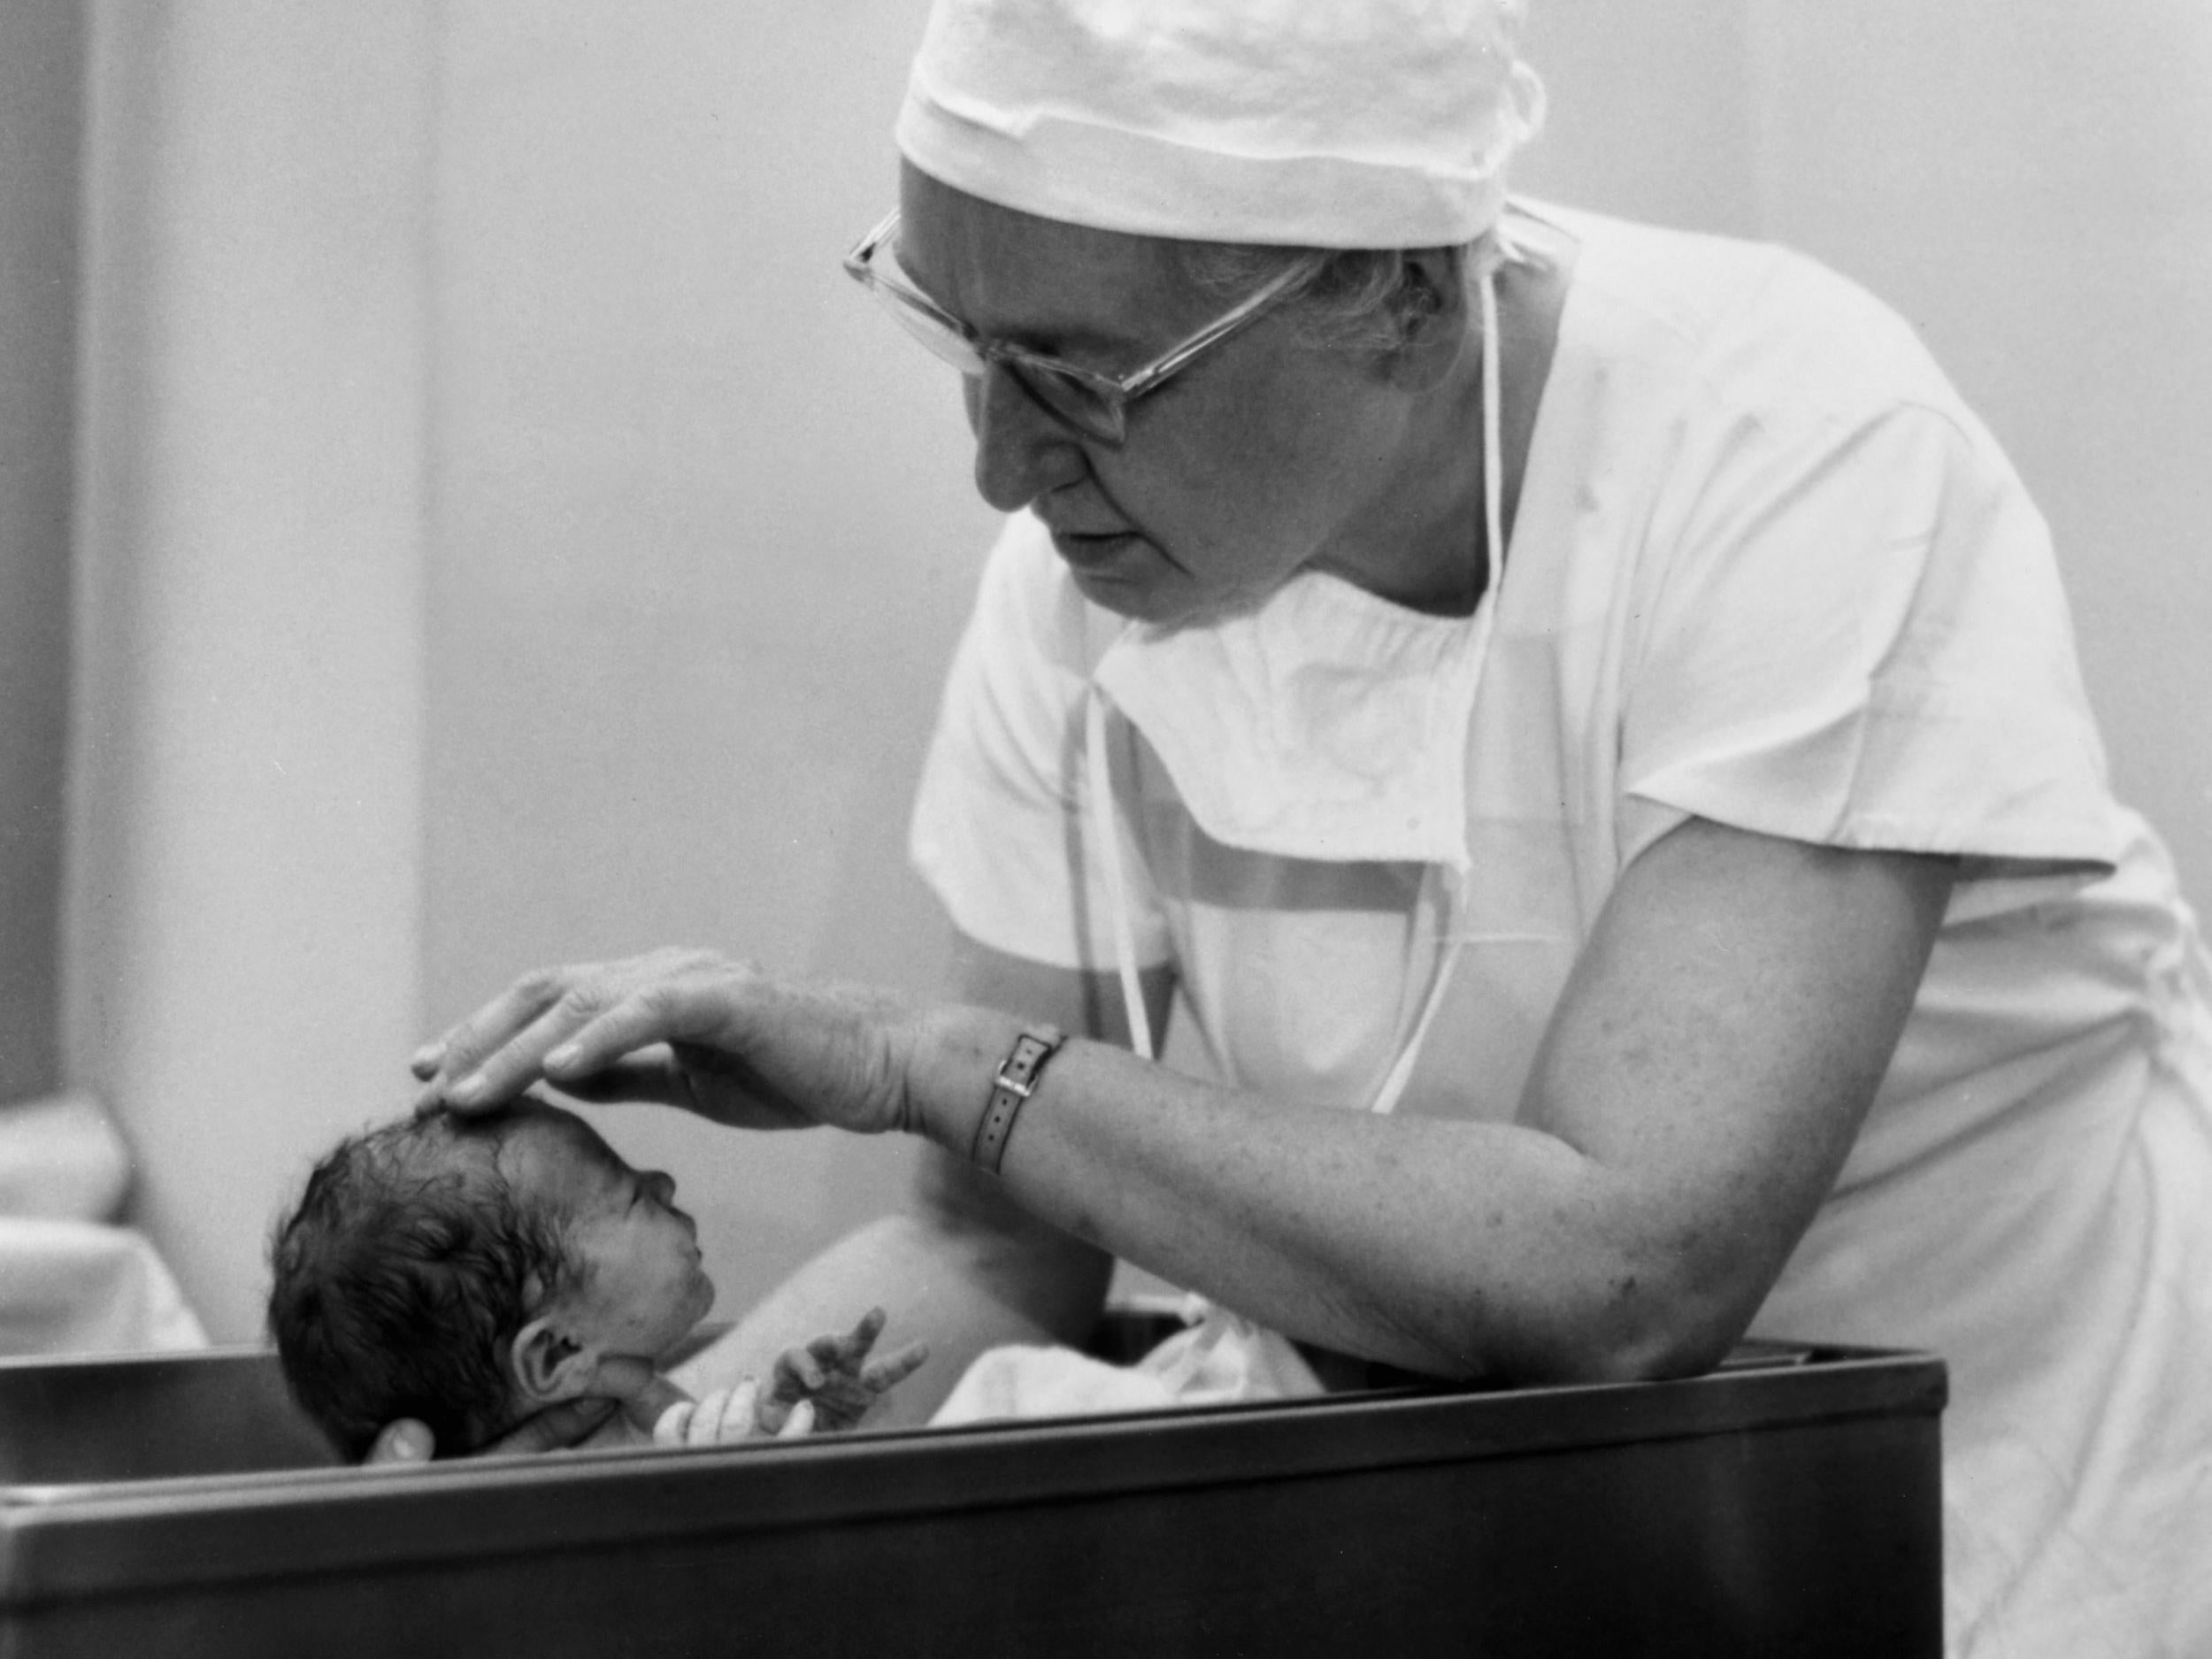 Virginia Apgar examining a newborn baby